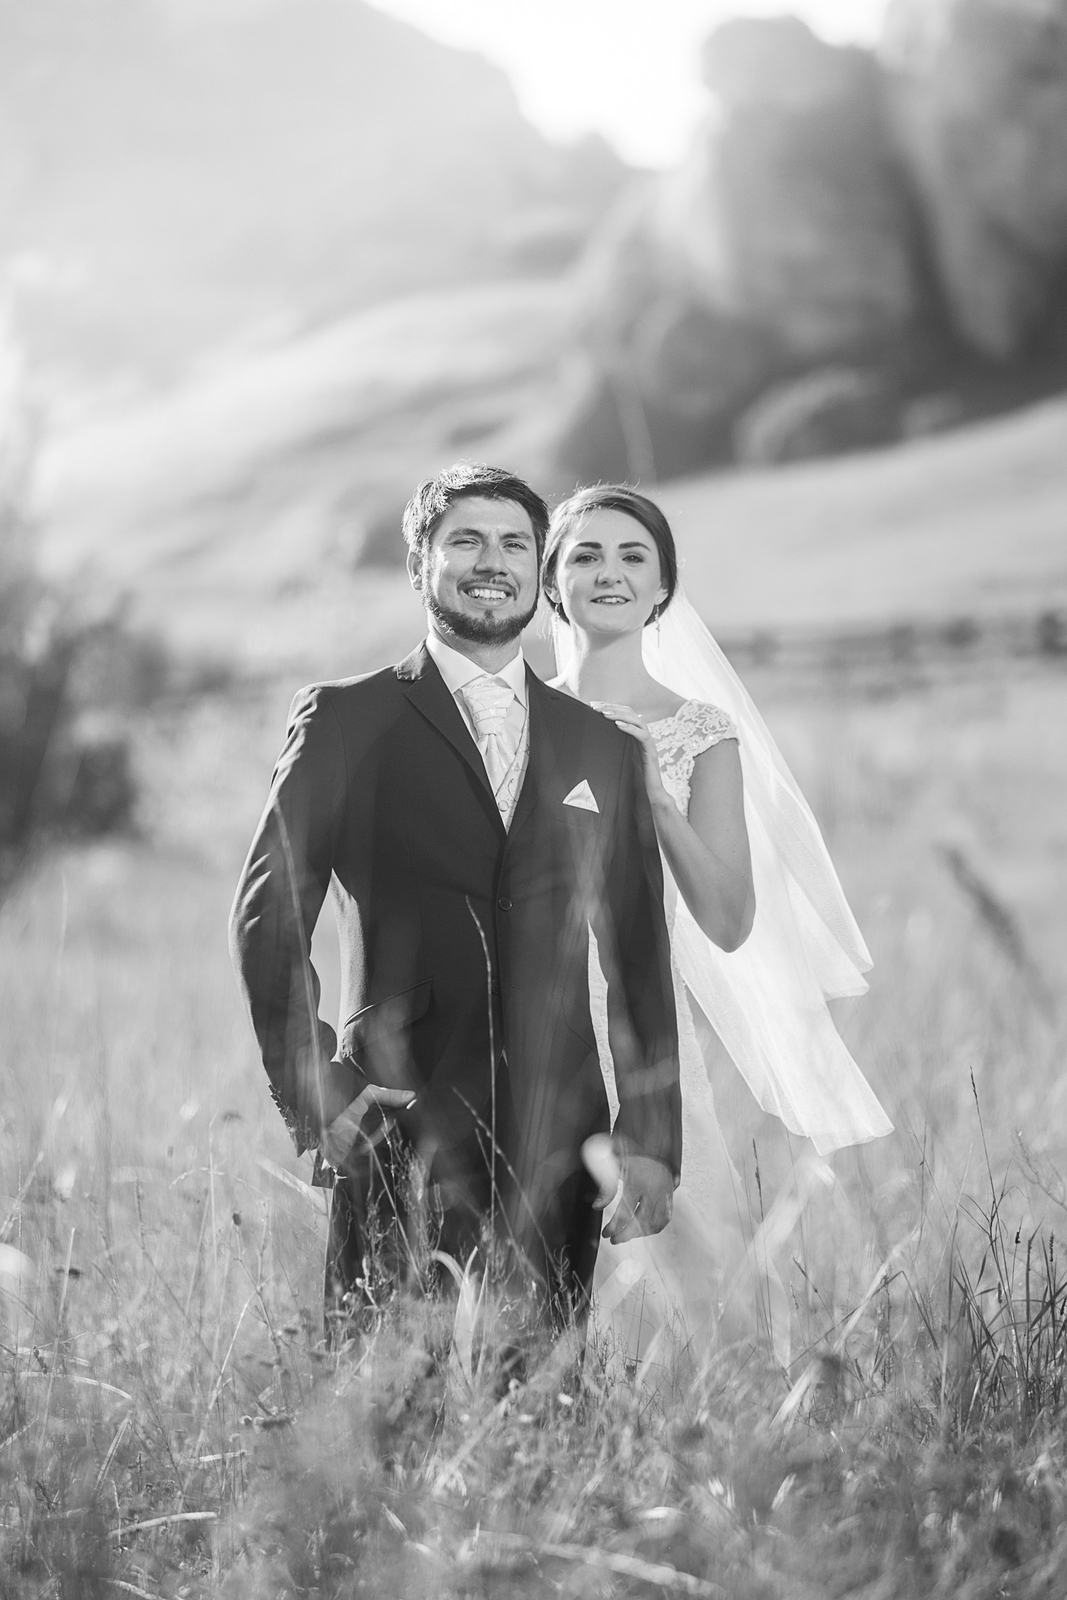 Para Młoda wynajęła fotografa ślubnego na zdjęcia plenerowe po weselu.